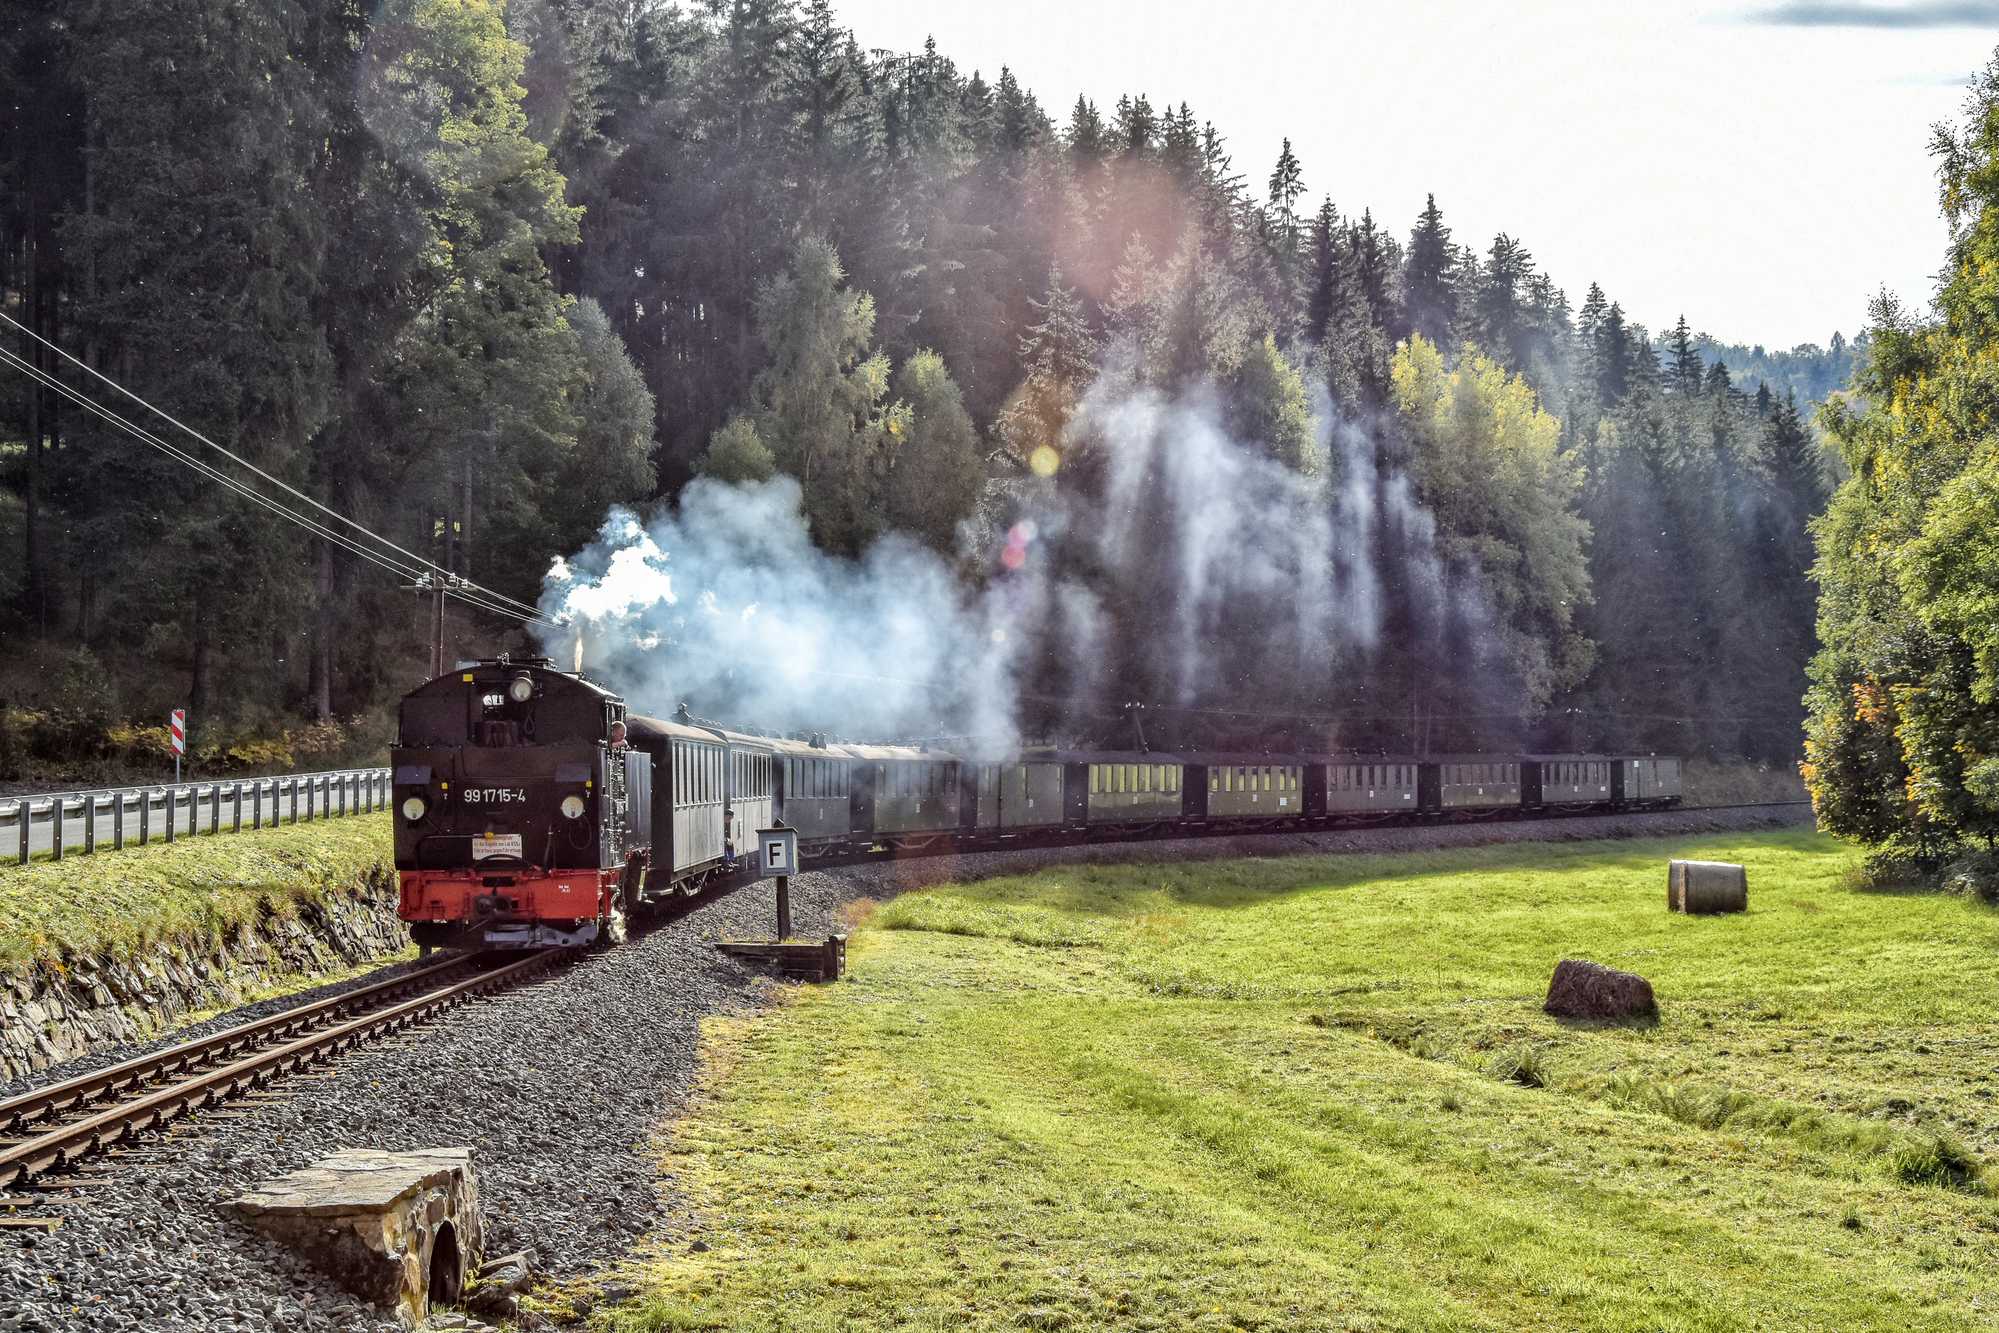 Die Lastprobefahrt der VI K 99 1715-4 fand am 5. Oktober 2022 mit elf Reisezugwagen statt. Thomas Poth traf den langen Zug talwärts fahrend kurz vor dem Bahnübergang des Abzweigs nach Grumbach – die 1927 gebaute Lokomotive beförderte die Wagen aber auch mühelos nach Jöhstadt zurück.